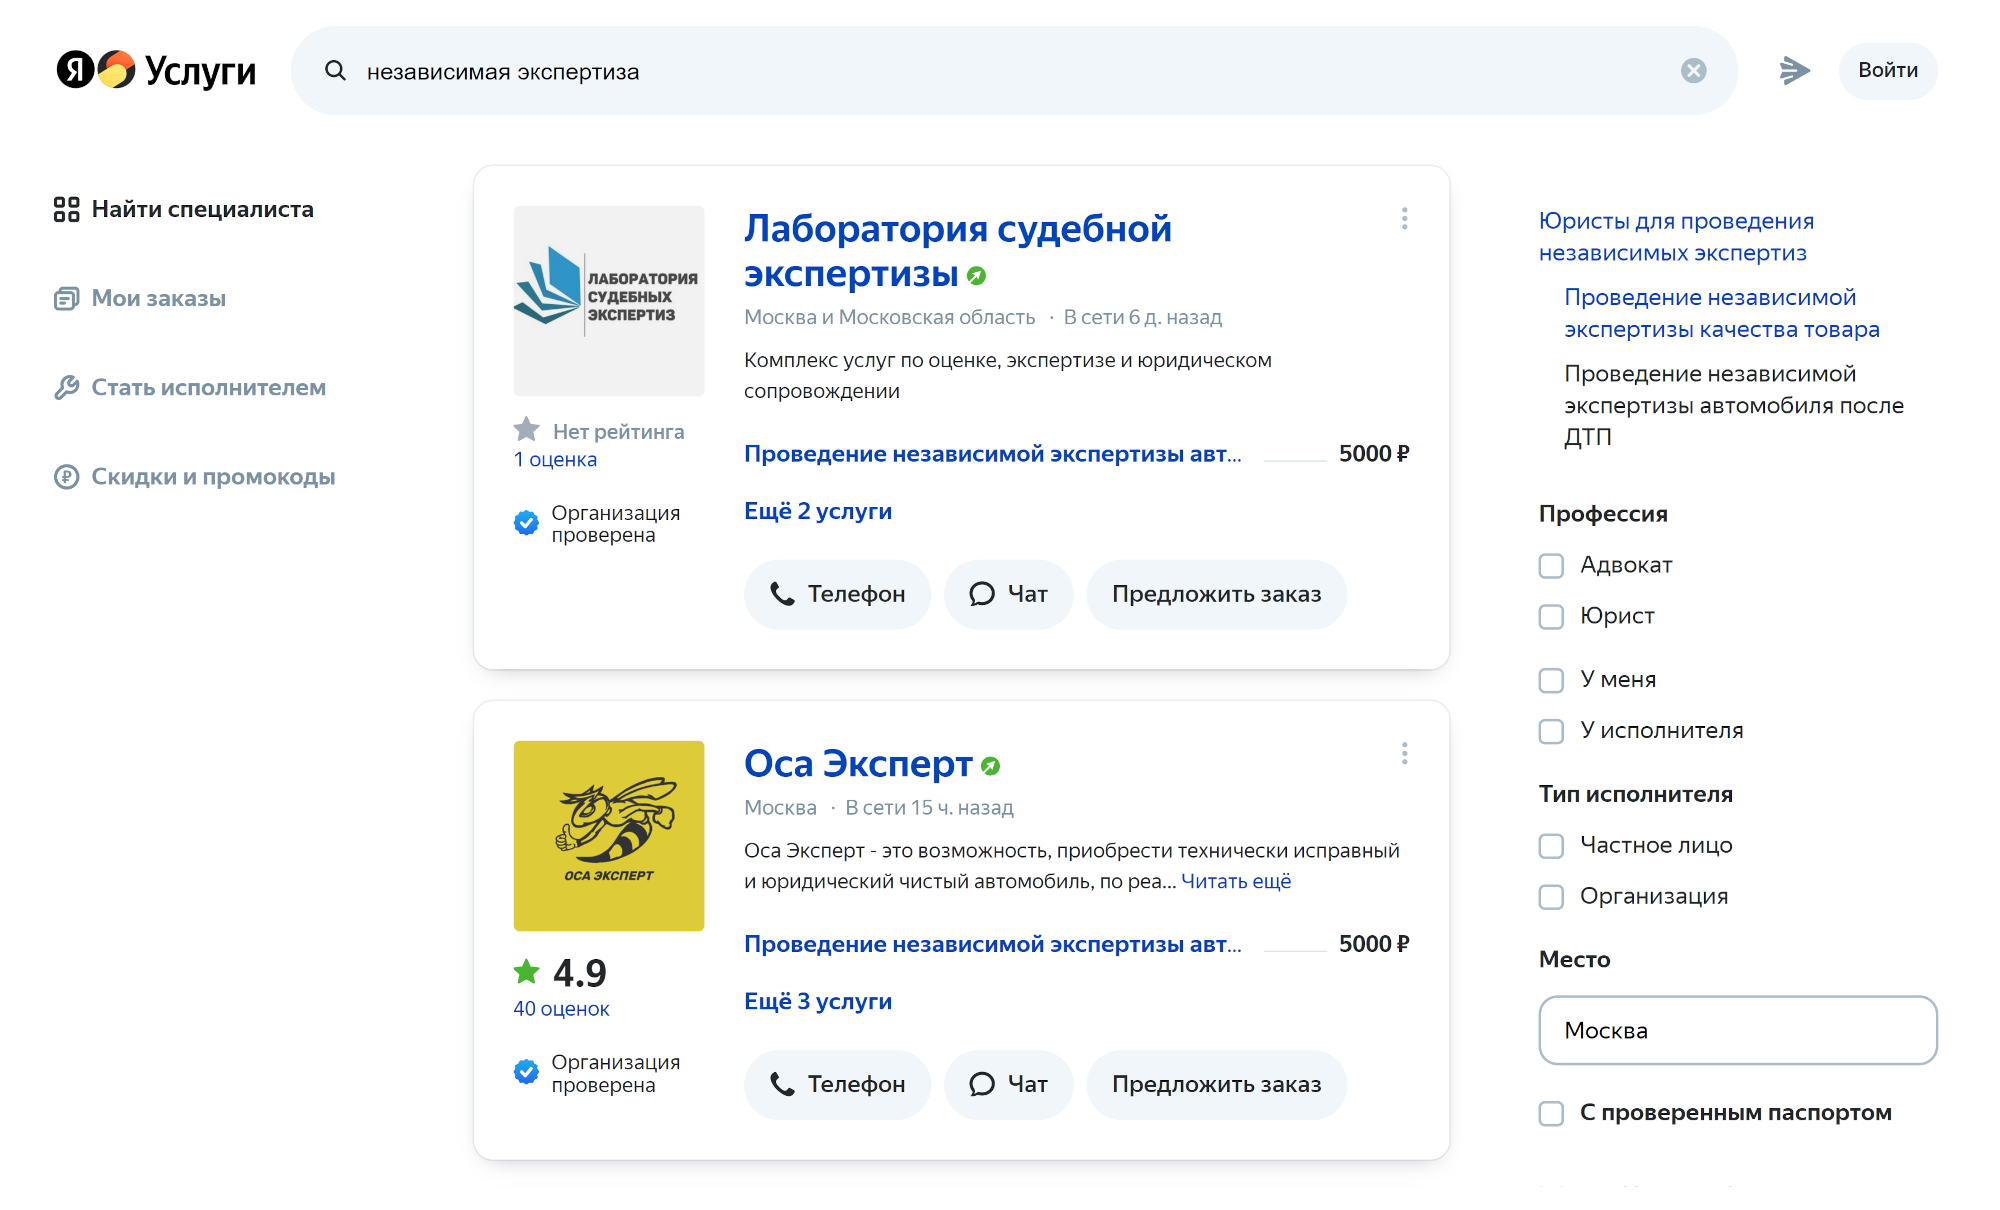 Независимая экспертиза — востребованная услуга, экспертов легко найти на бесплатных досках объявлений. Источник: uslugi.yandex.ru